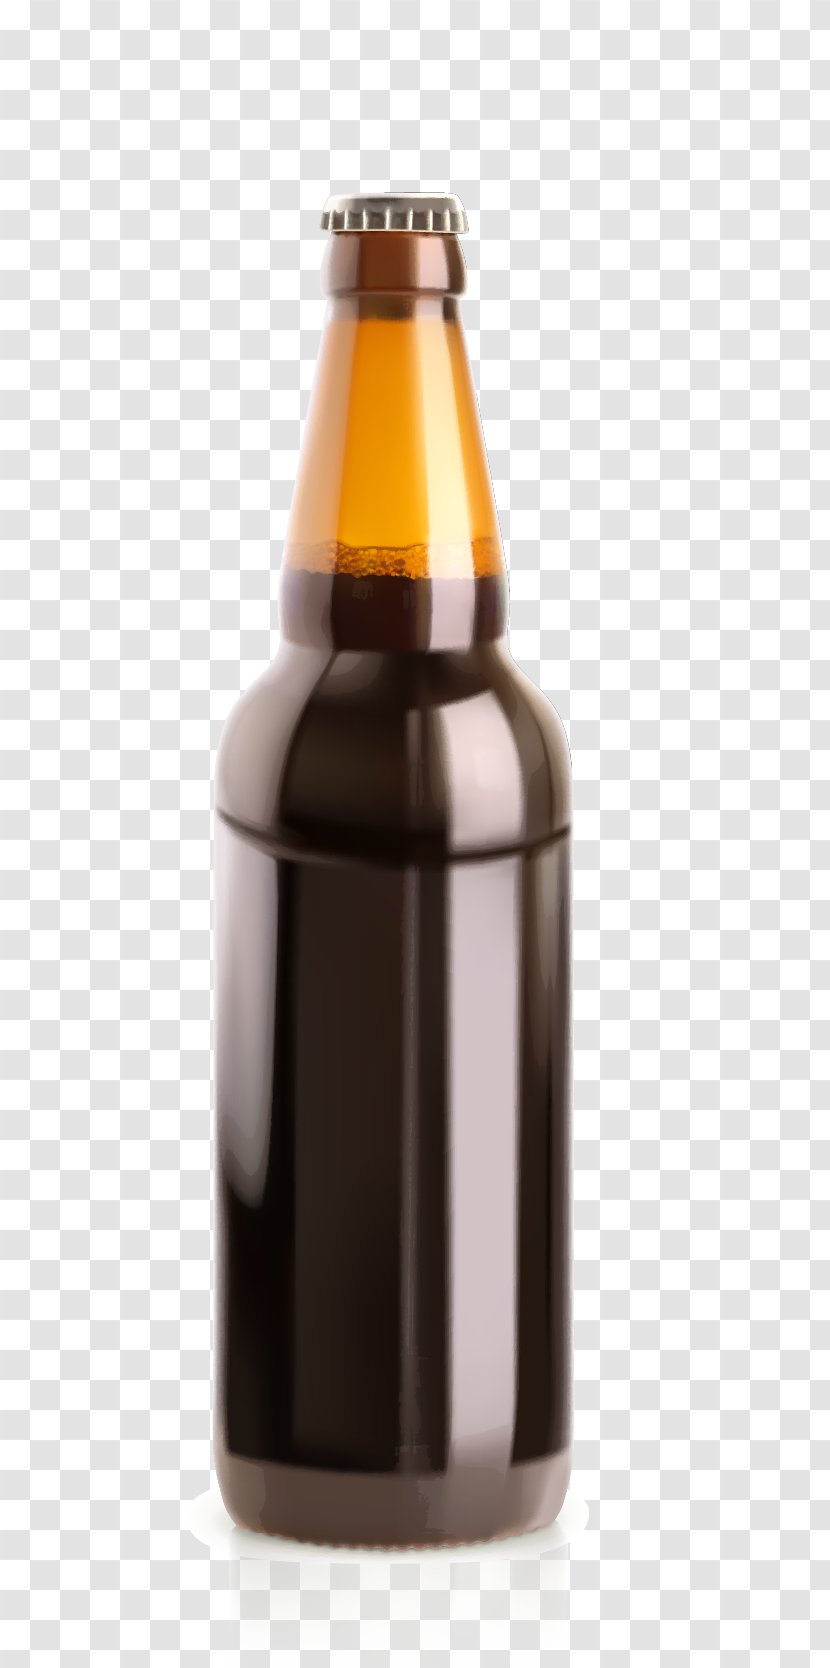 Beer Bottle Glass Illustration - Sesame Oil Bottles Vector Material Transparent PNG